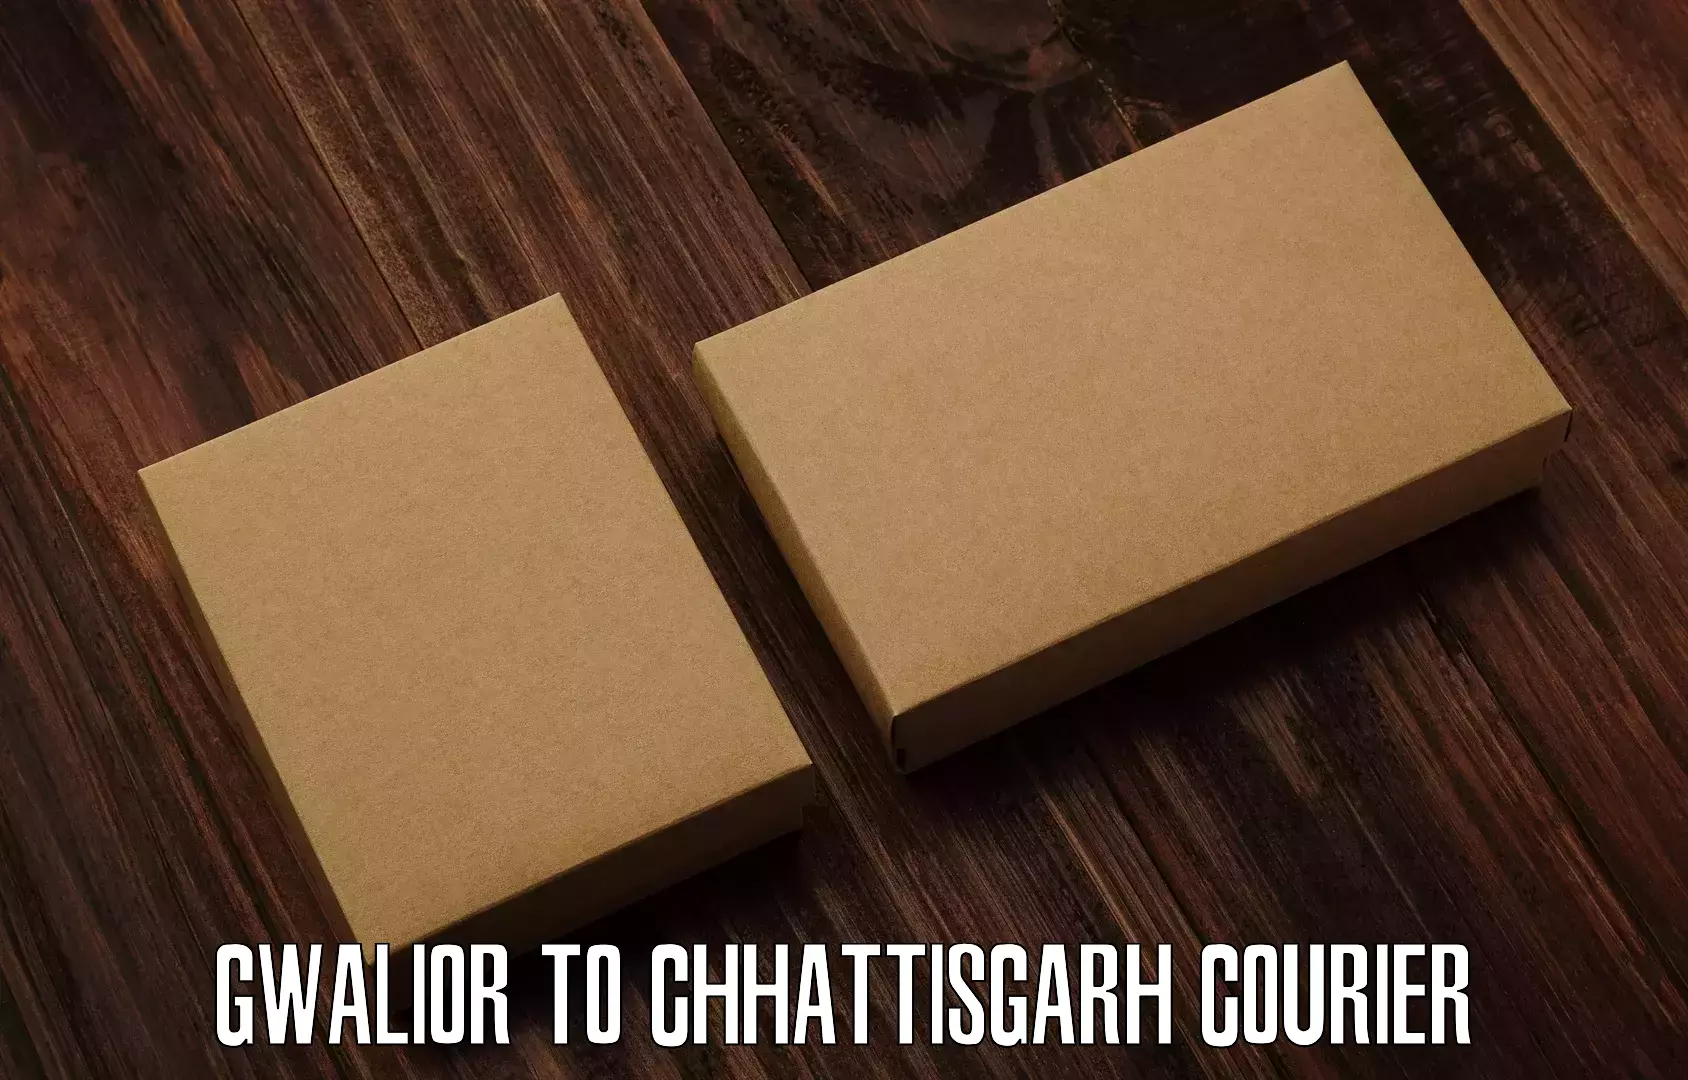 High-speed parcel service Gwalior to Mahasamund